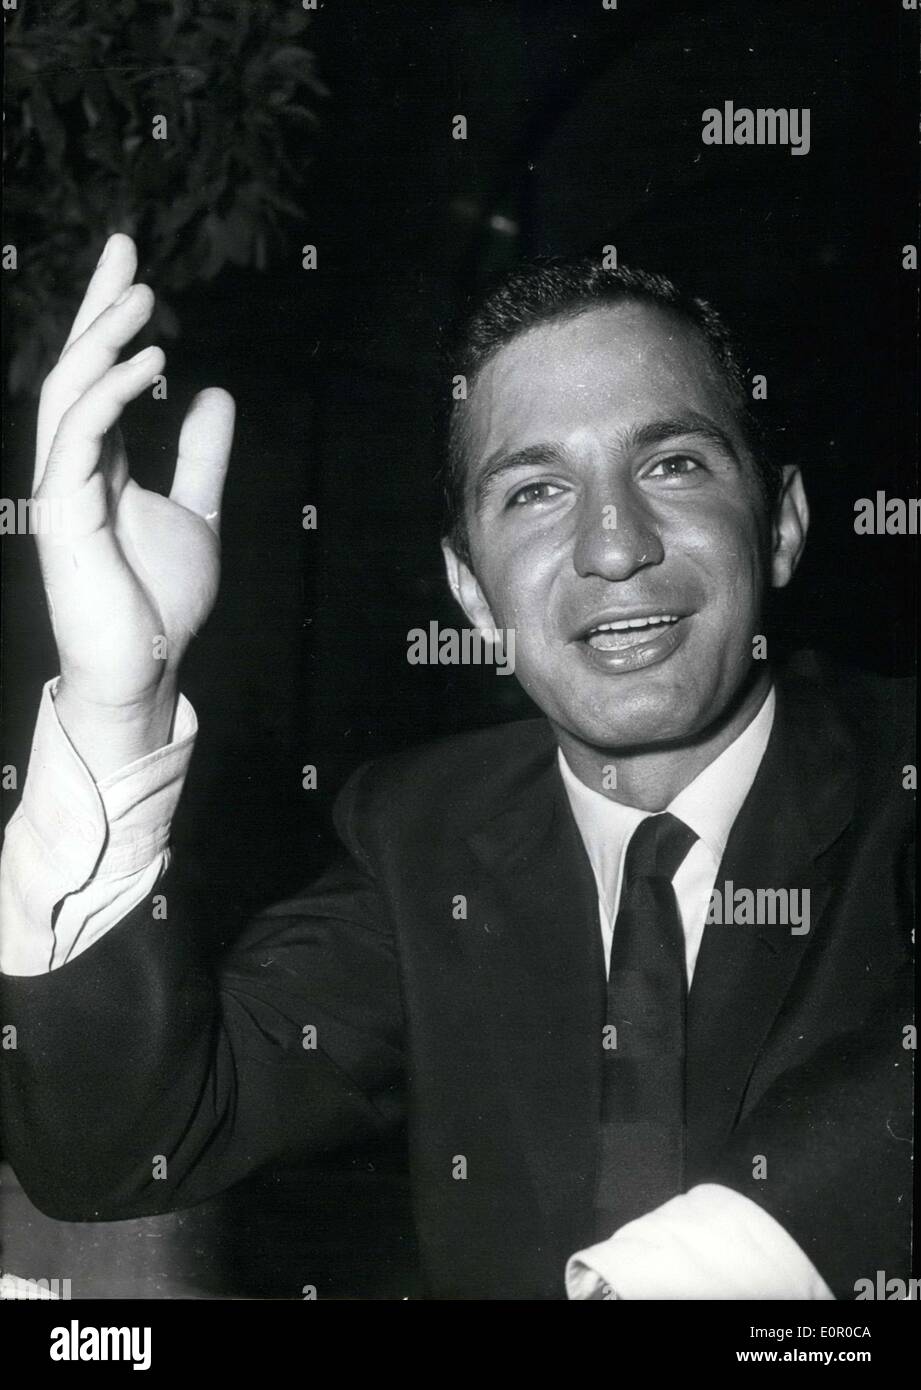 Lug. 09, 1957 - Ben Gazarra, star del film ''Demain ce seront des hommes'', considerato il rivale di Marlon Brando, è stata fotografata al suo arrivo a Parigi oggi. Foto Stock